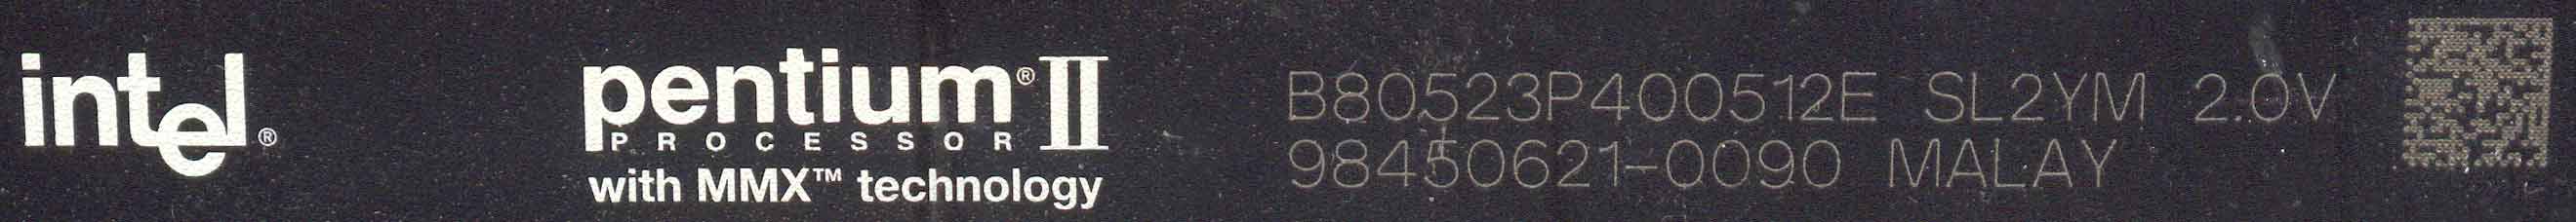 Pentium II B80523P400512E SL2YM 2.0V 98450621-0090 MALAY